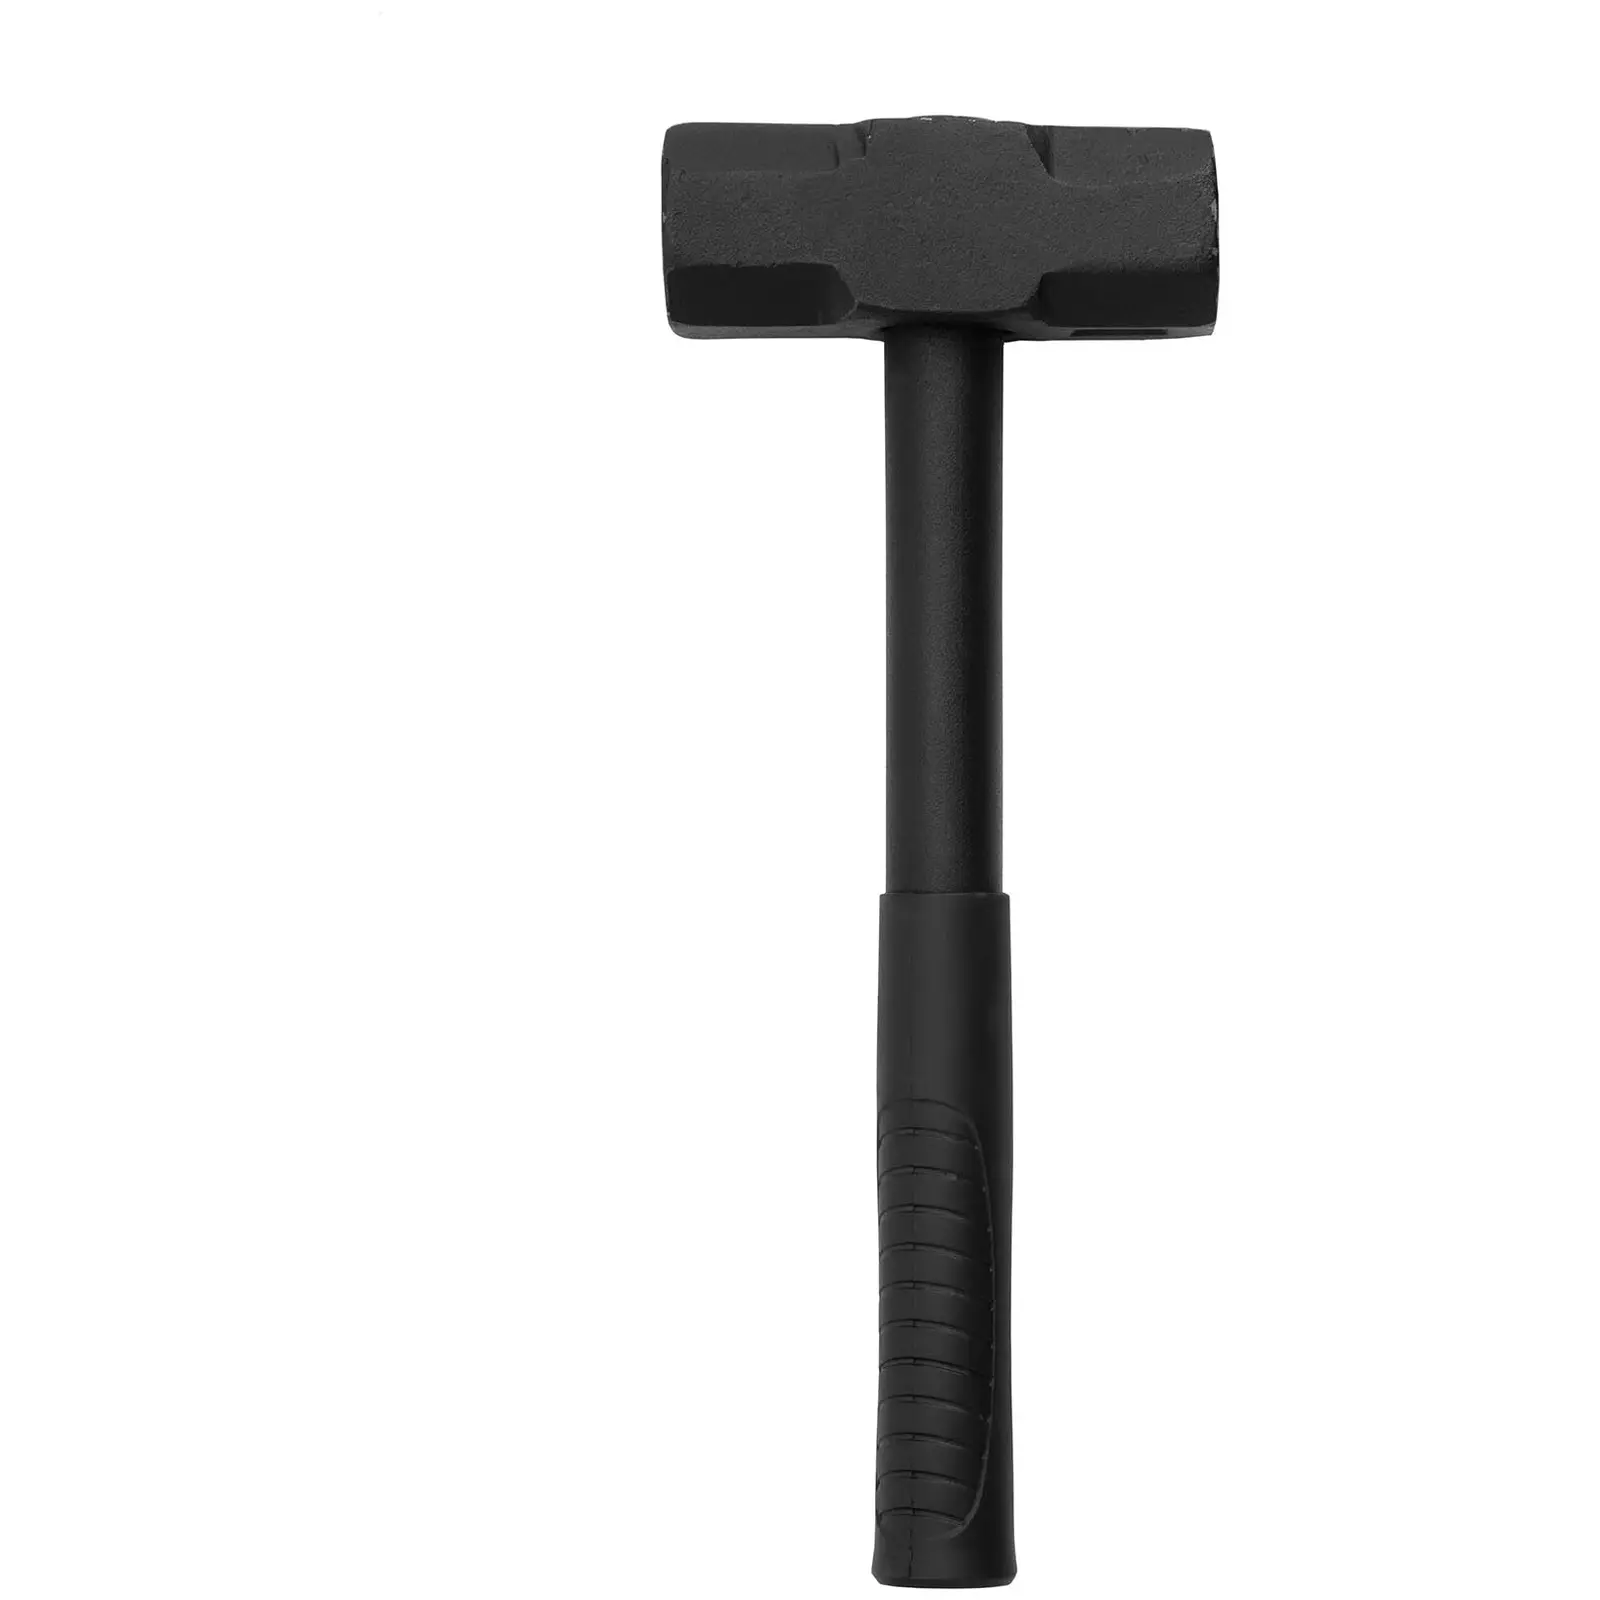 Spaccalegna con martello - Diametro tronco: 16 cm - Manuale - Lama in acciaio al carbonio temprato